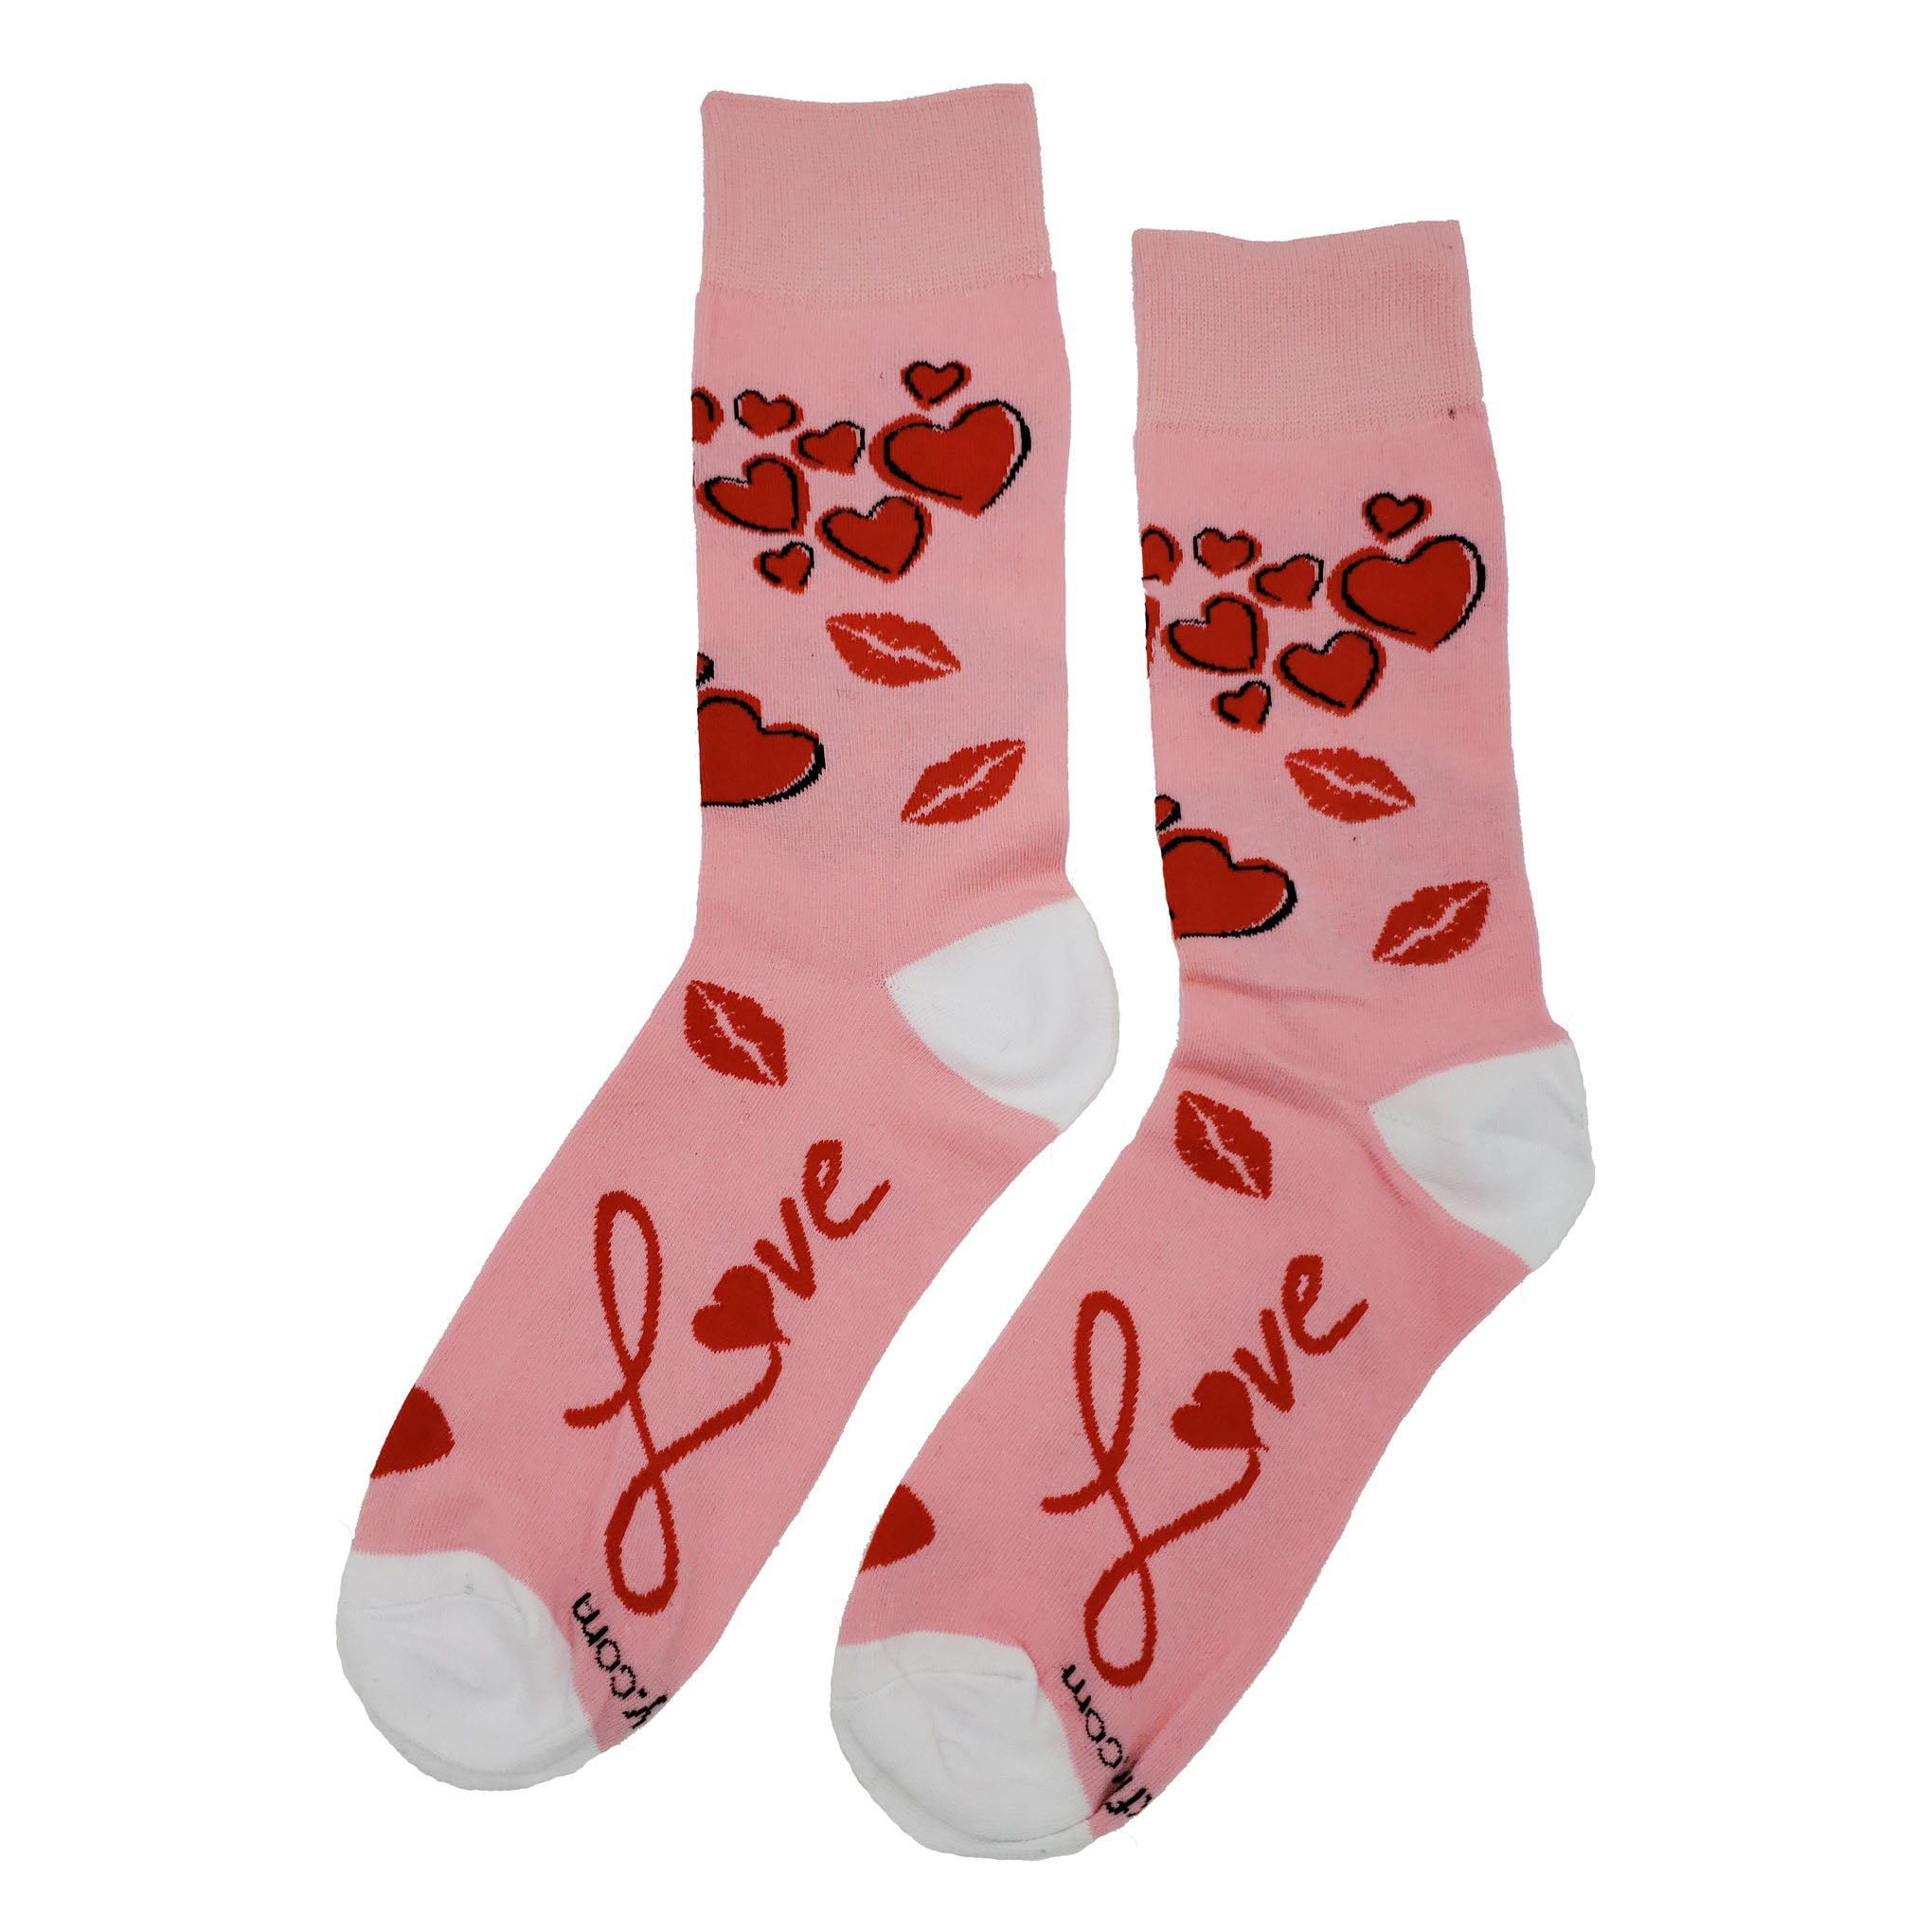 Love Socks - Fun and Crazy Socks at Sockfly.com